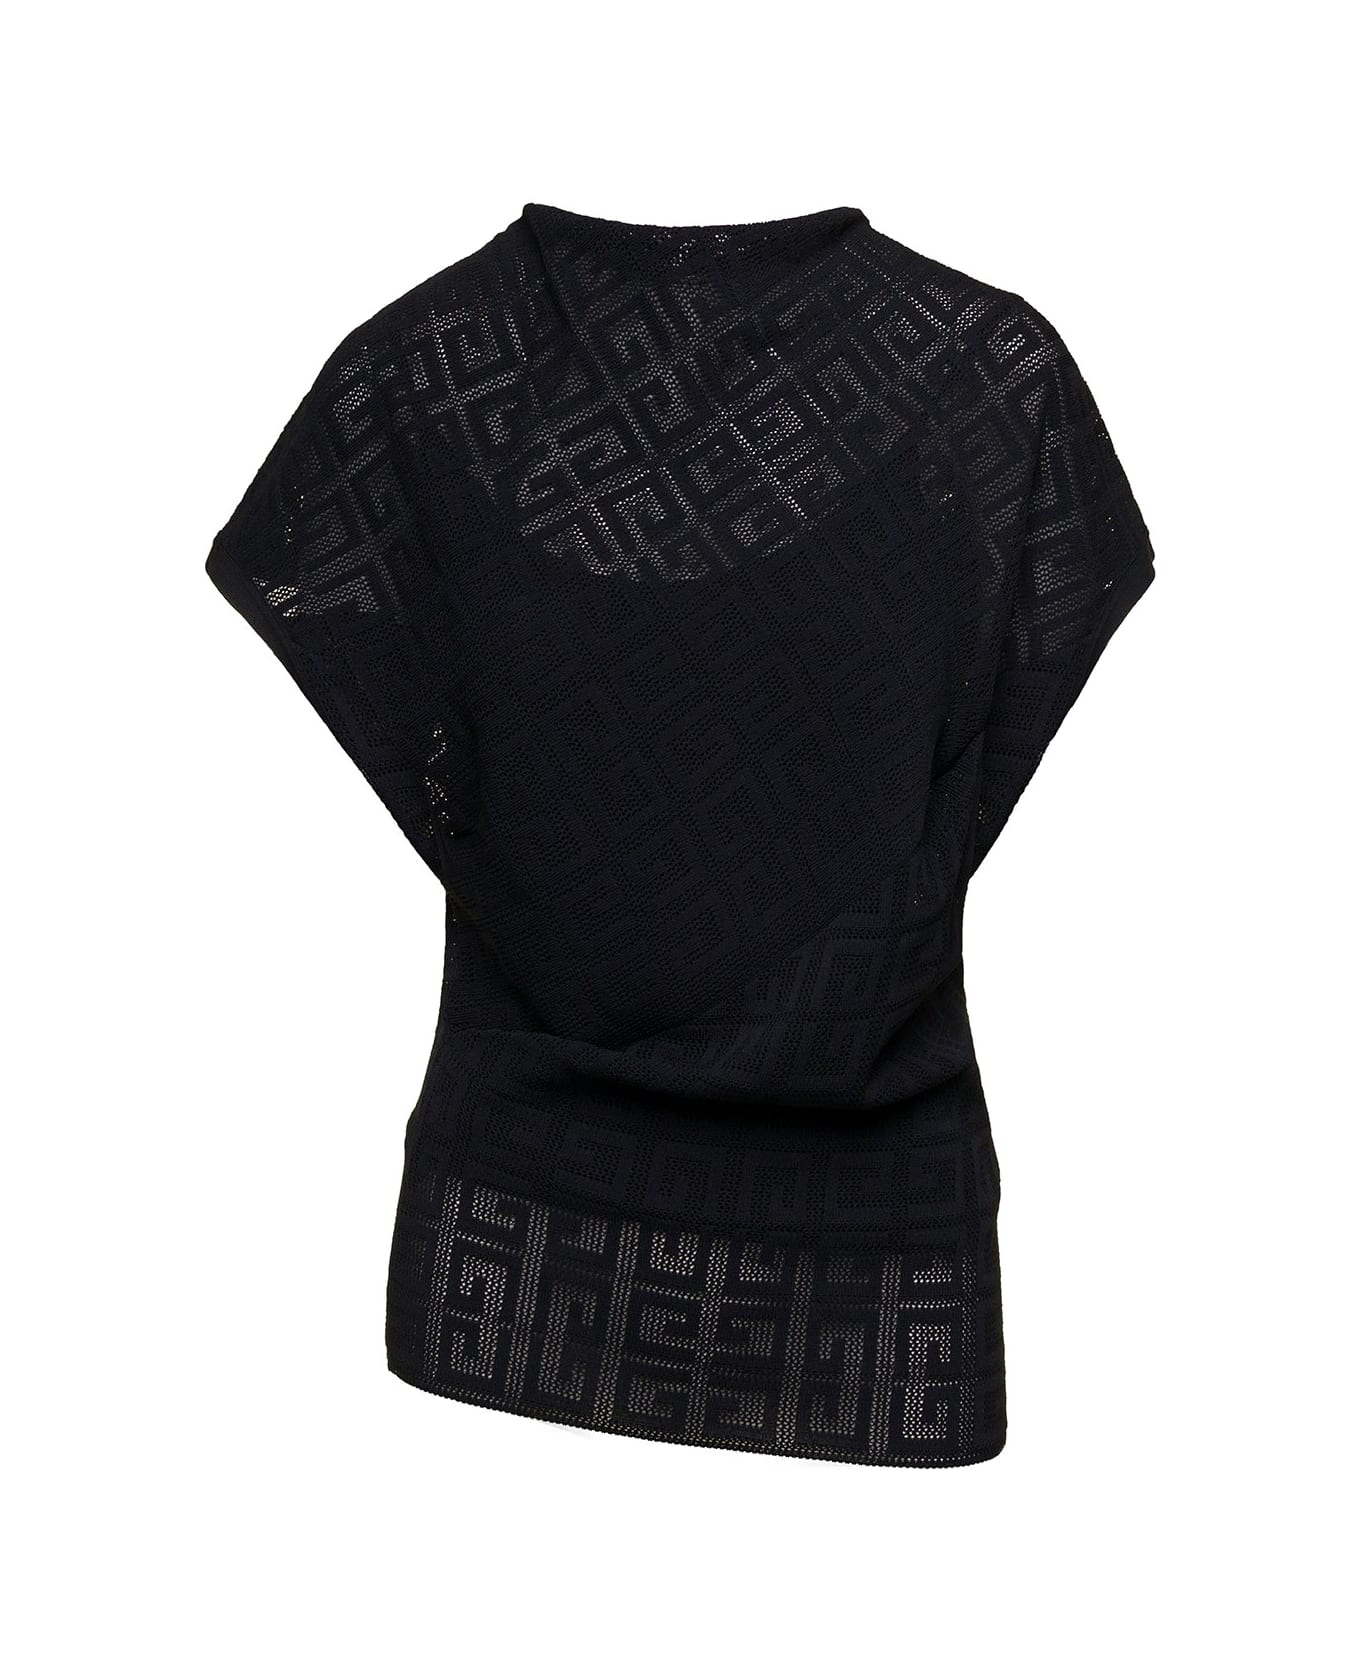 Givenchy Draped Short Sleeves Top - Black